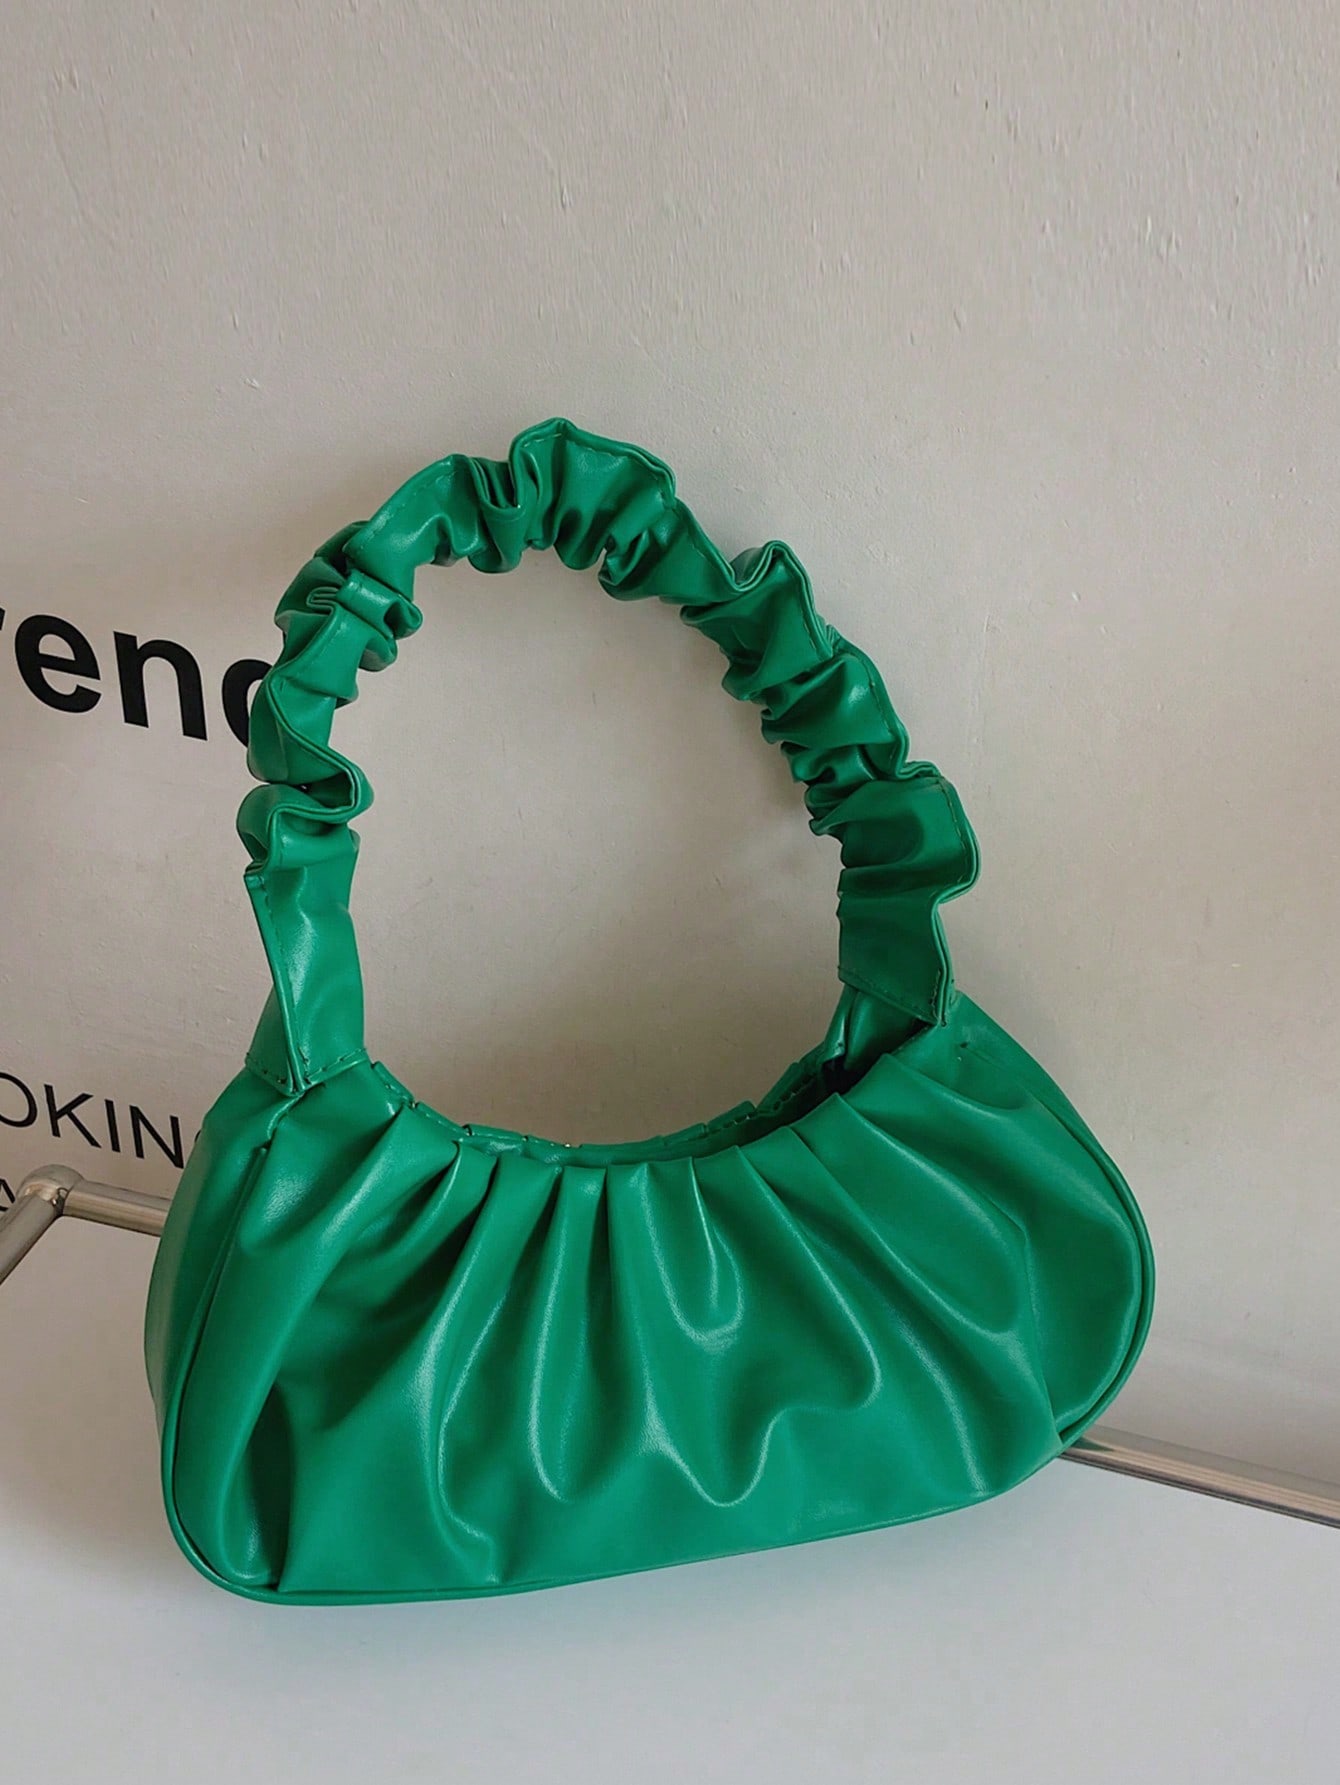 1шт модная и минималистичная женская сумка через плечо в сложенном виде, зеленый